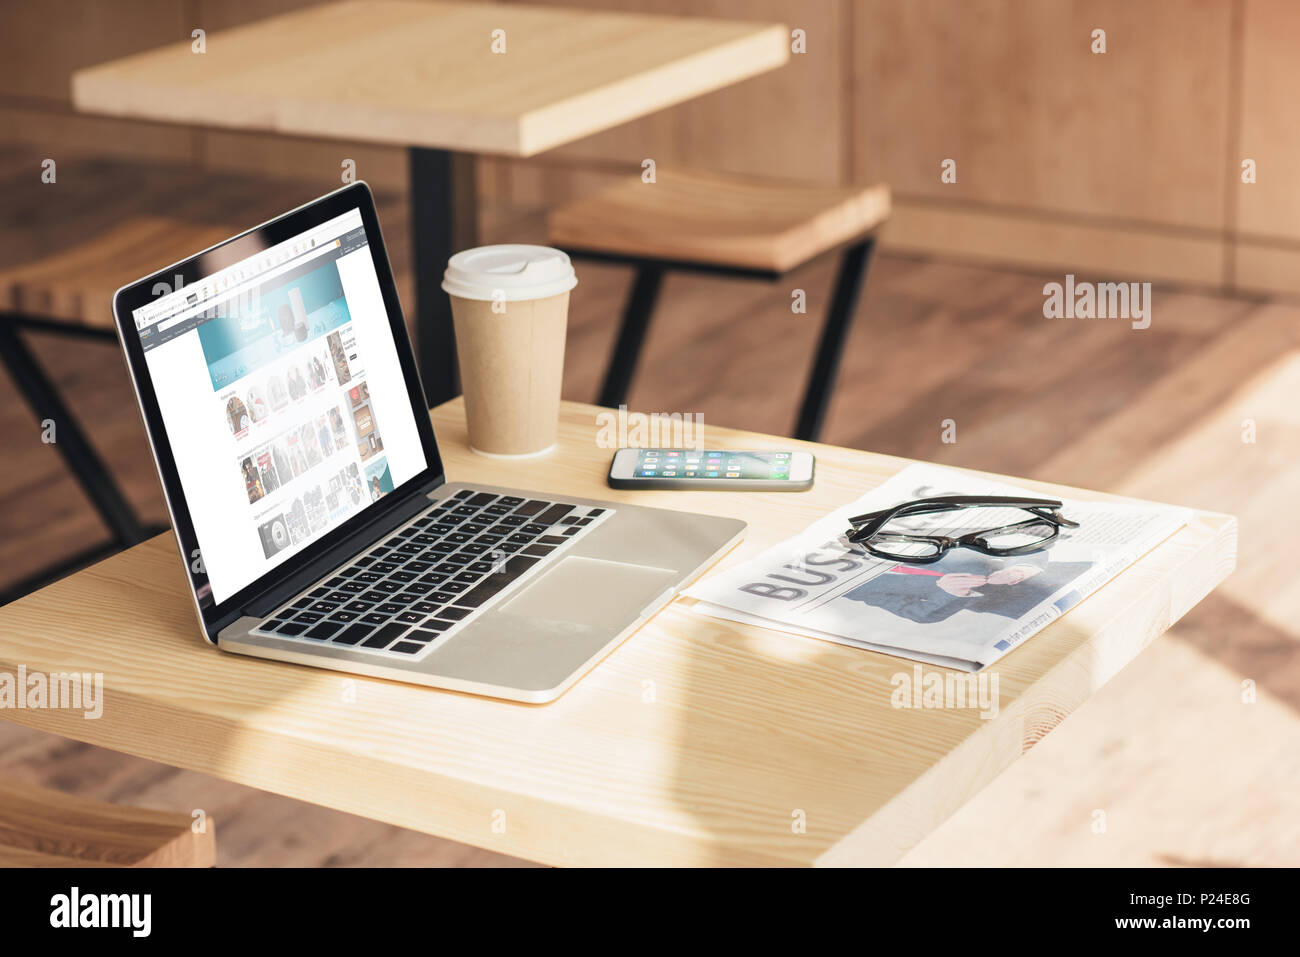 Café Amazon Stockfotos und -bilder Kaufen - Alamy